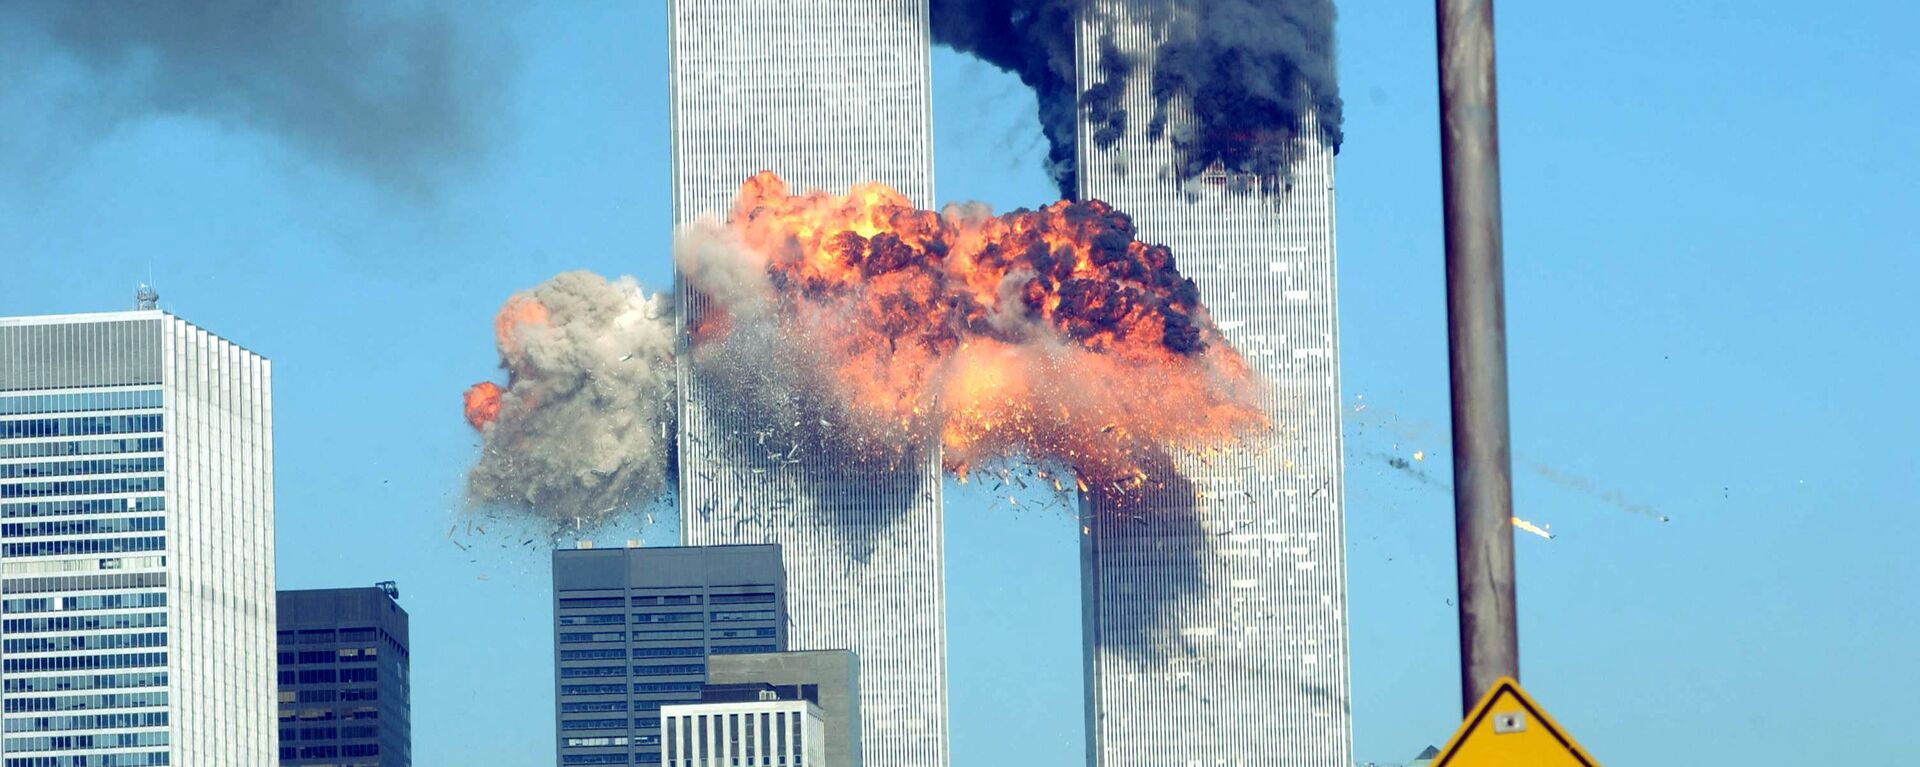 Разрушения в результате теракта 11 сентября в Нью-Йорке - Sputnik Արմենիա, 1920, 06.09.2021